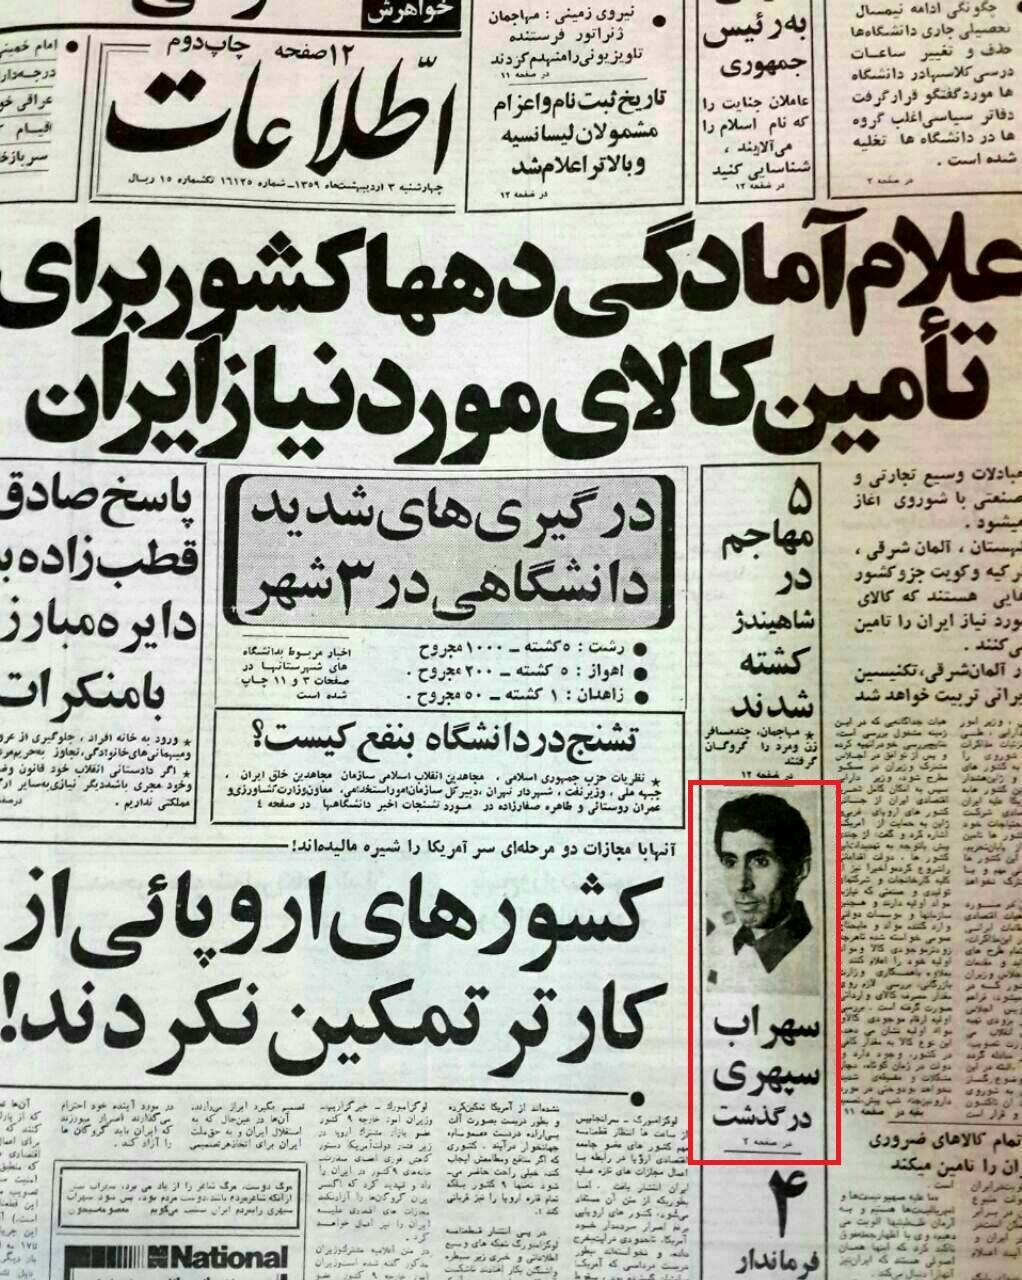 متن خبر درگذشت سهراب سپهری در اطلاعات 44 سال پیش